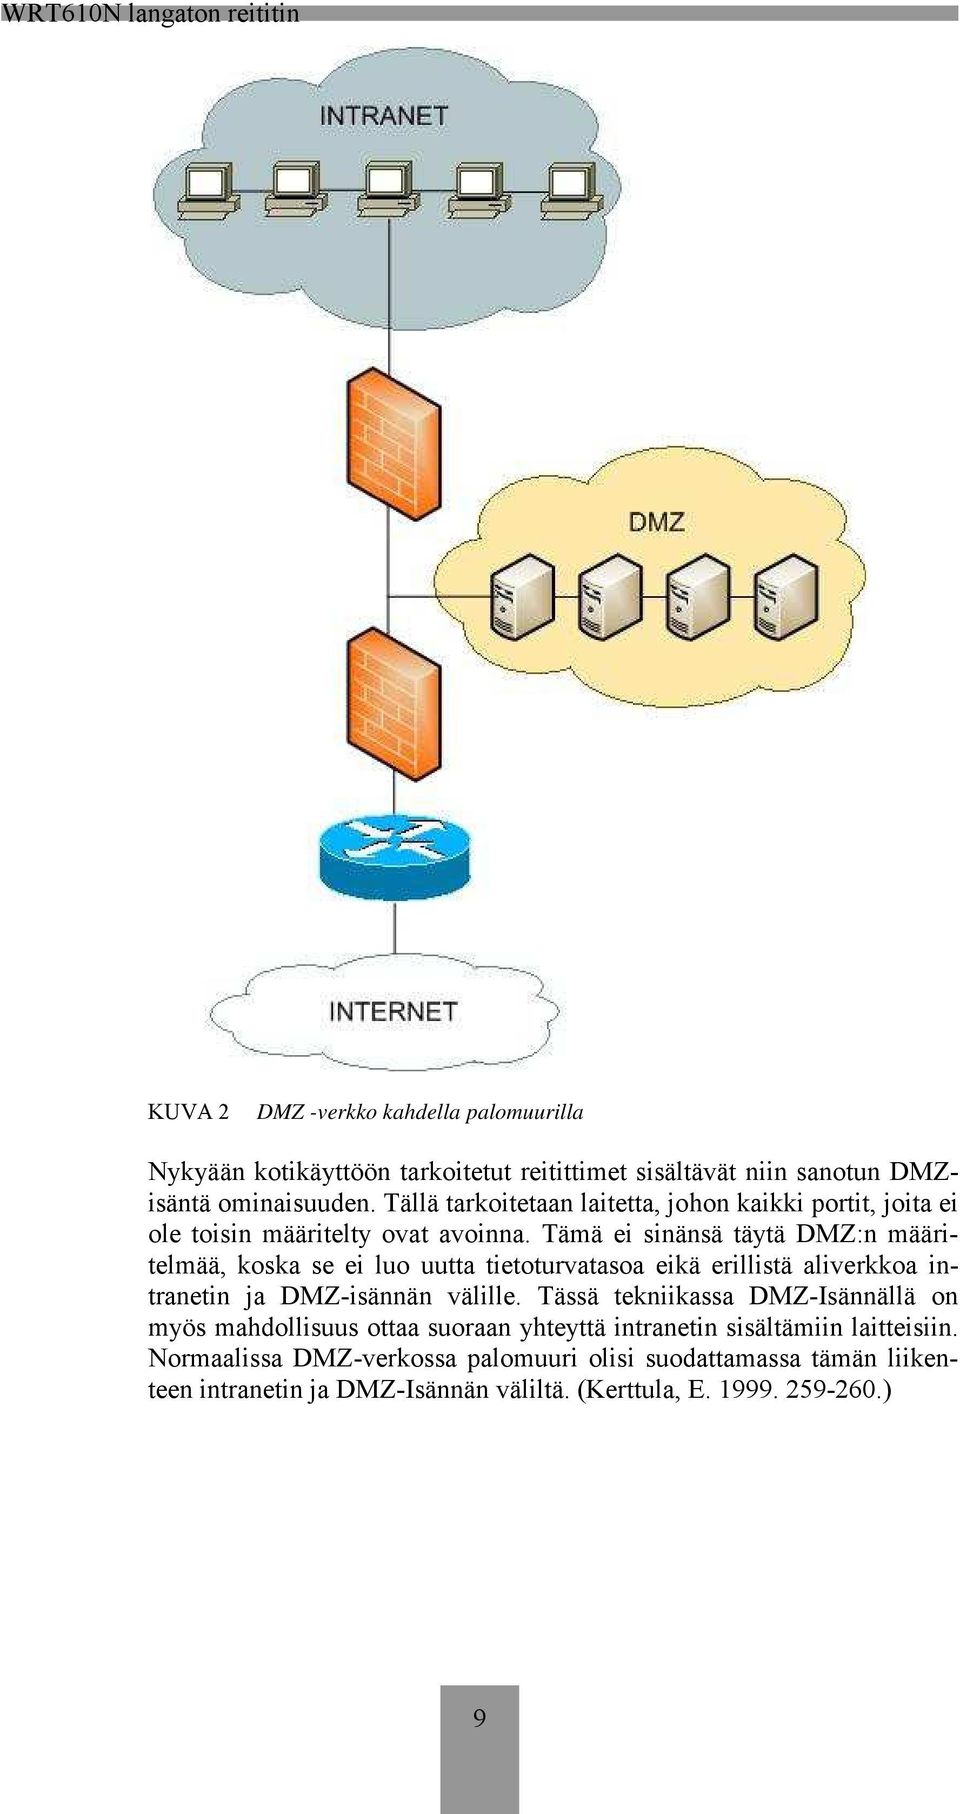 Tämä ei sinänsä täytä DMZ:n määritelmää, koska se ei luo uutta tietoturvatasoa eikä erillistä aliverkkoa intranetin ja DMZ-isännän välille.